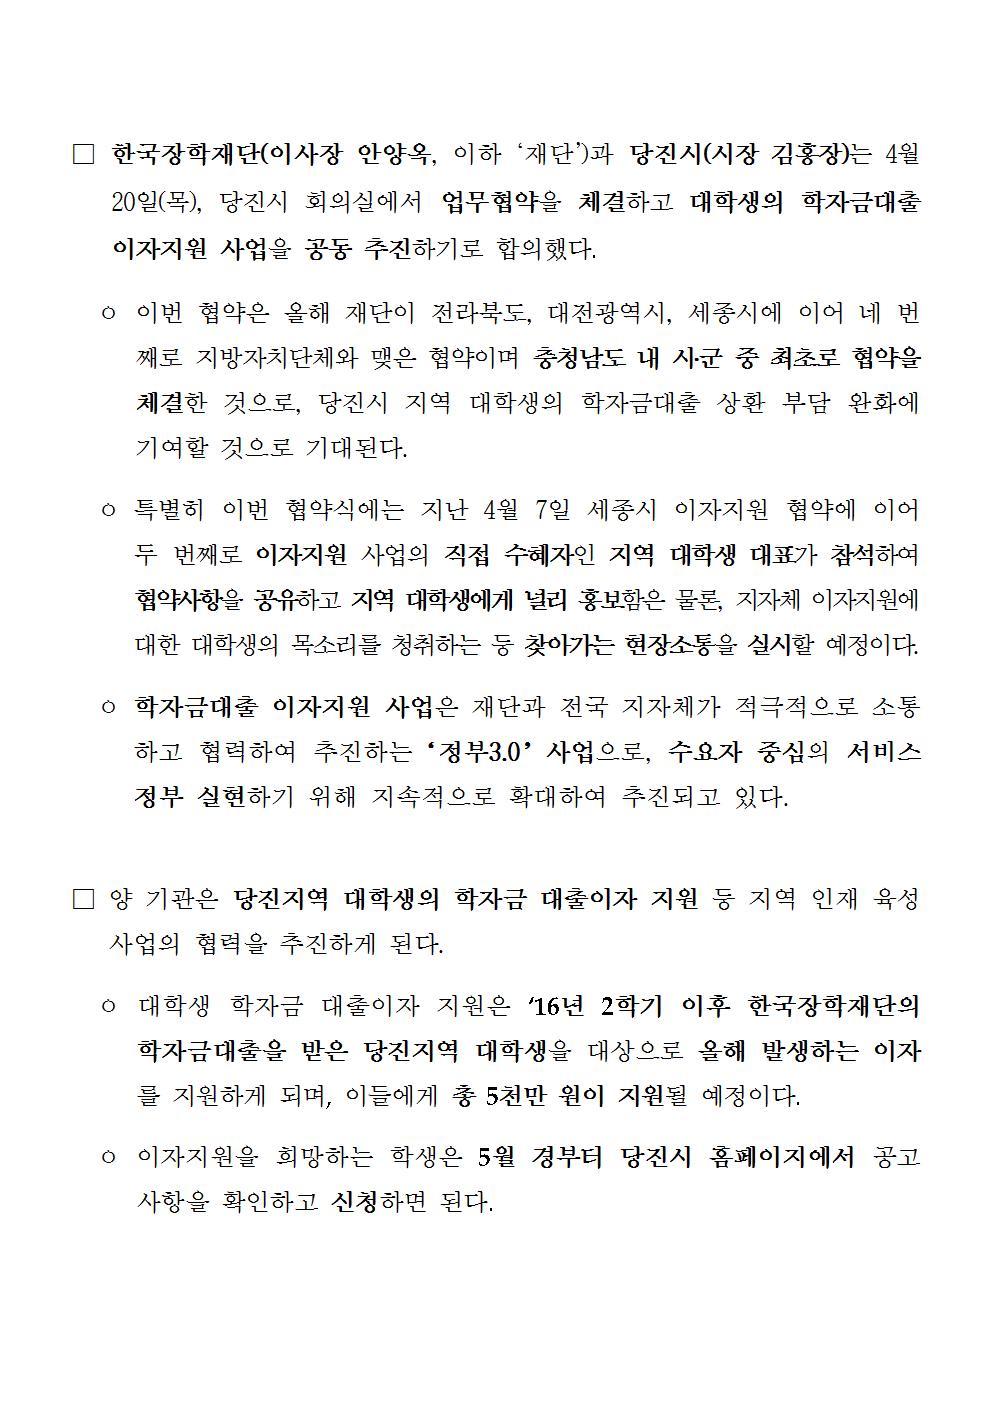 04-20(목)[보도자료] 한국장학재단, 당진시와 학자금대출 이자지원 업무협약 체결002.jpg